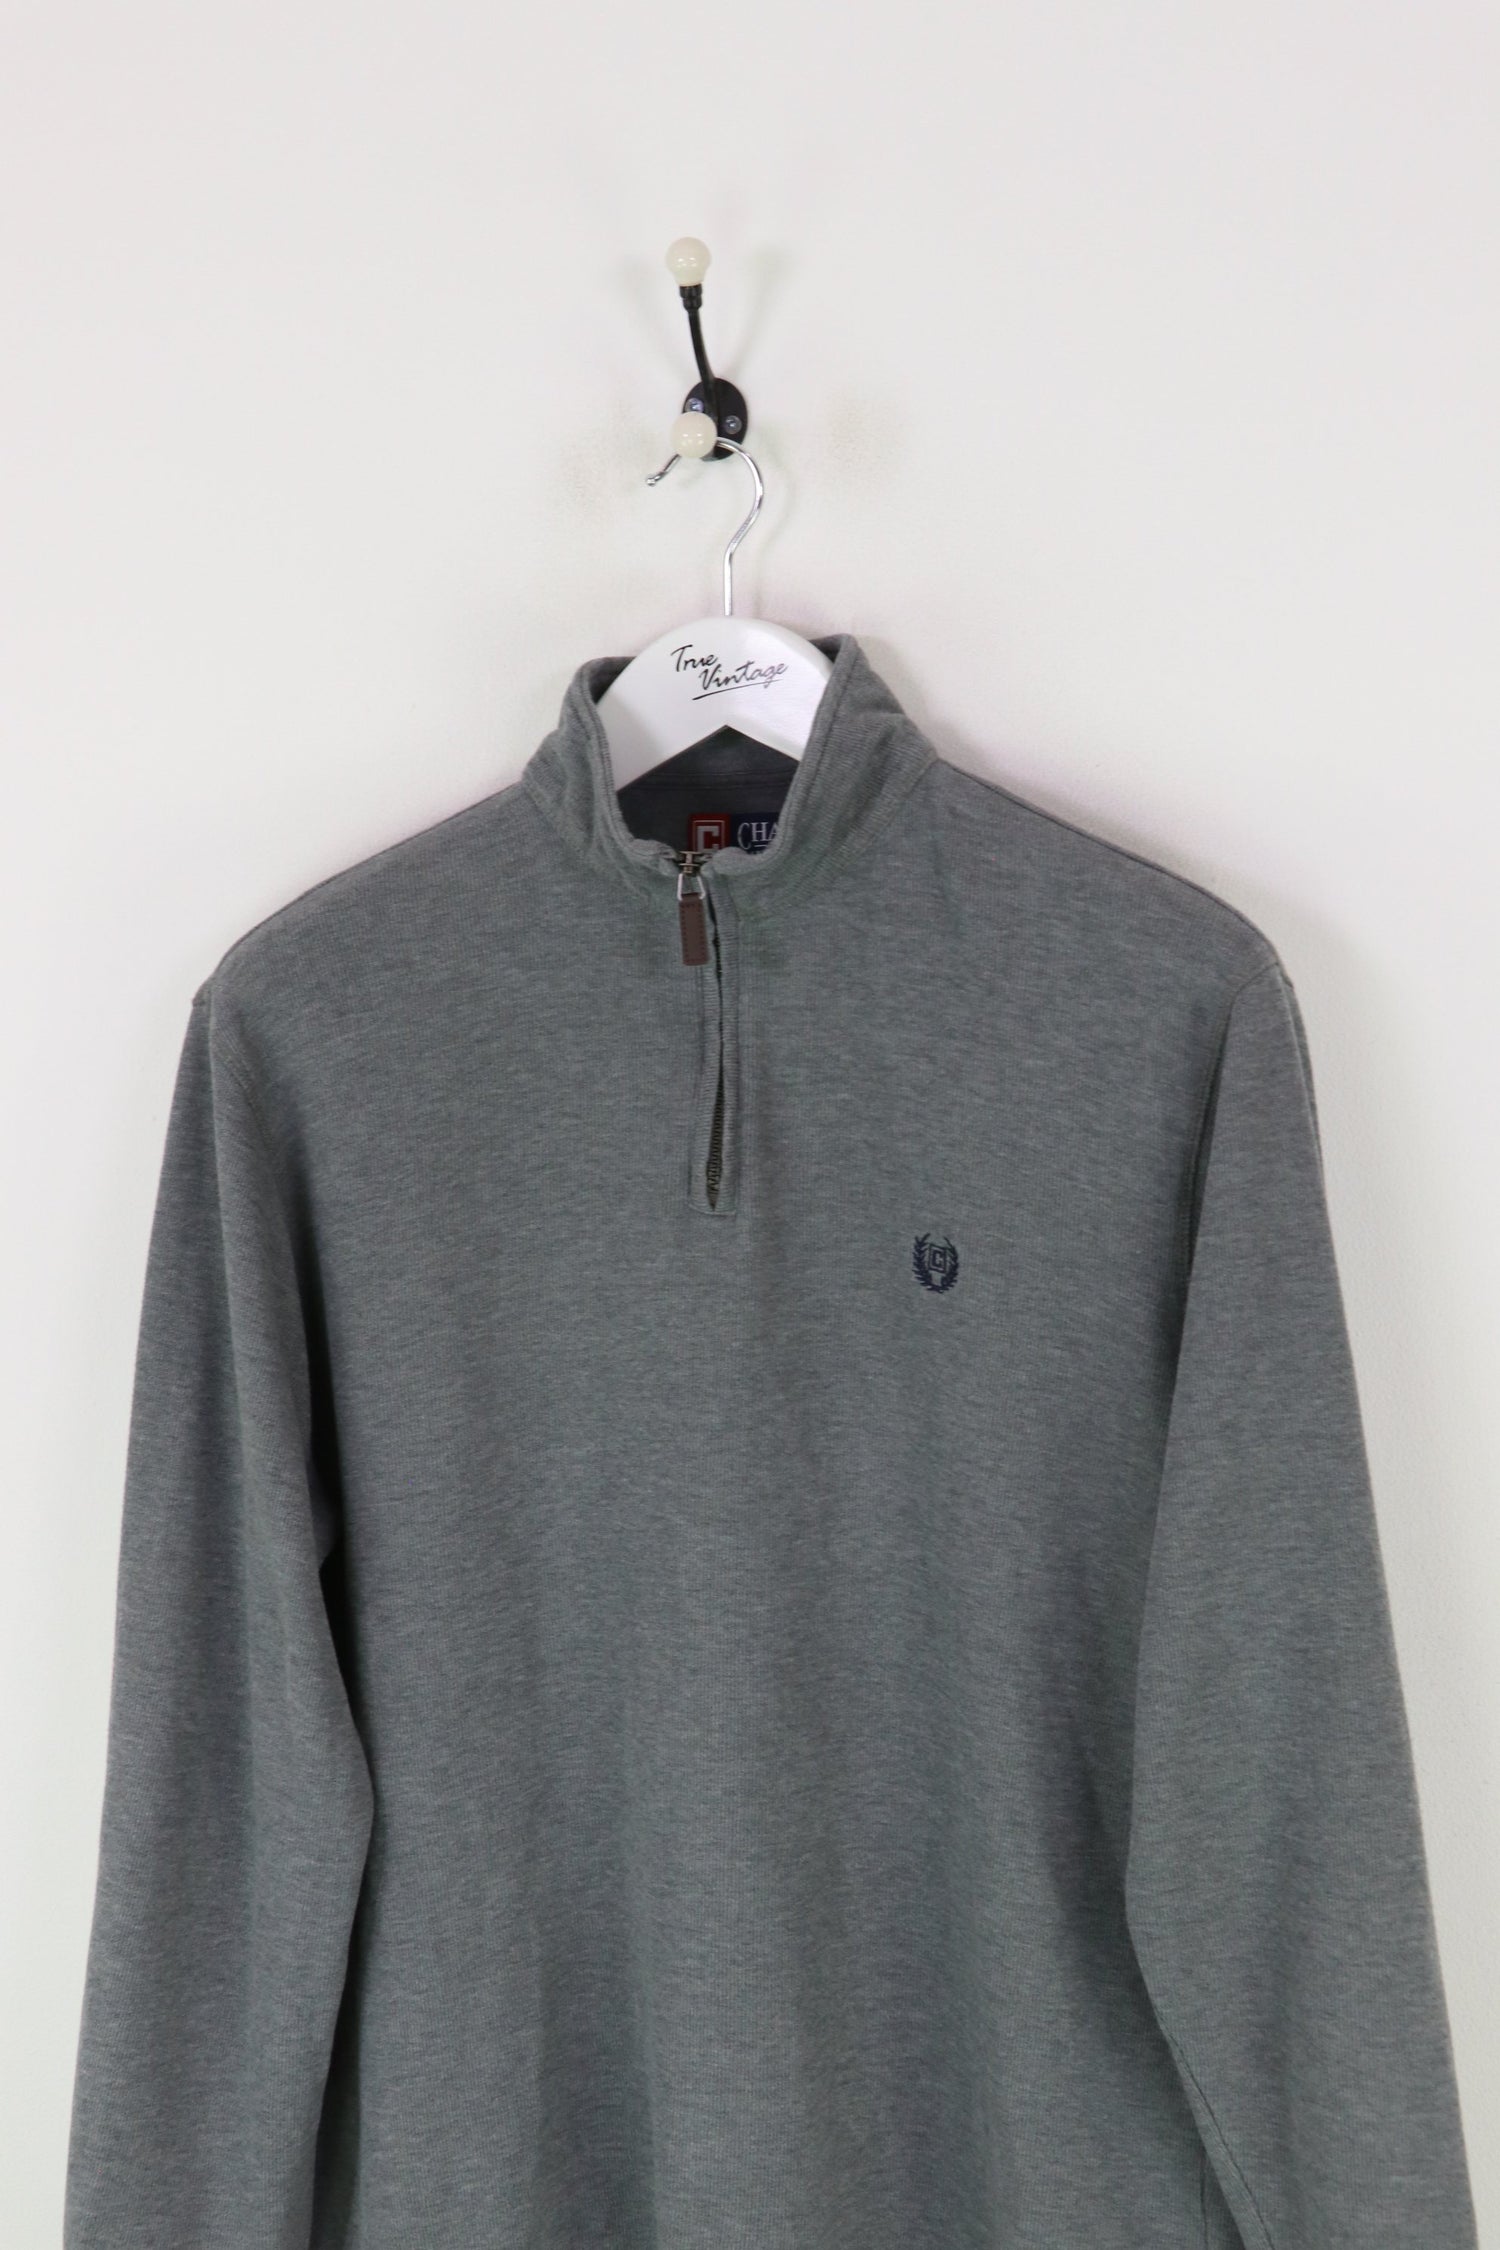 Ralph Lauren Chaps 1/4 Zip Sweatshirt Grey Medium